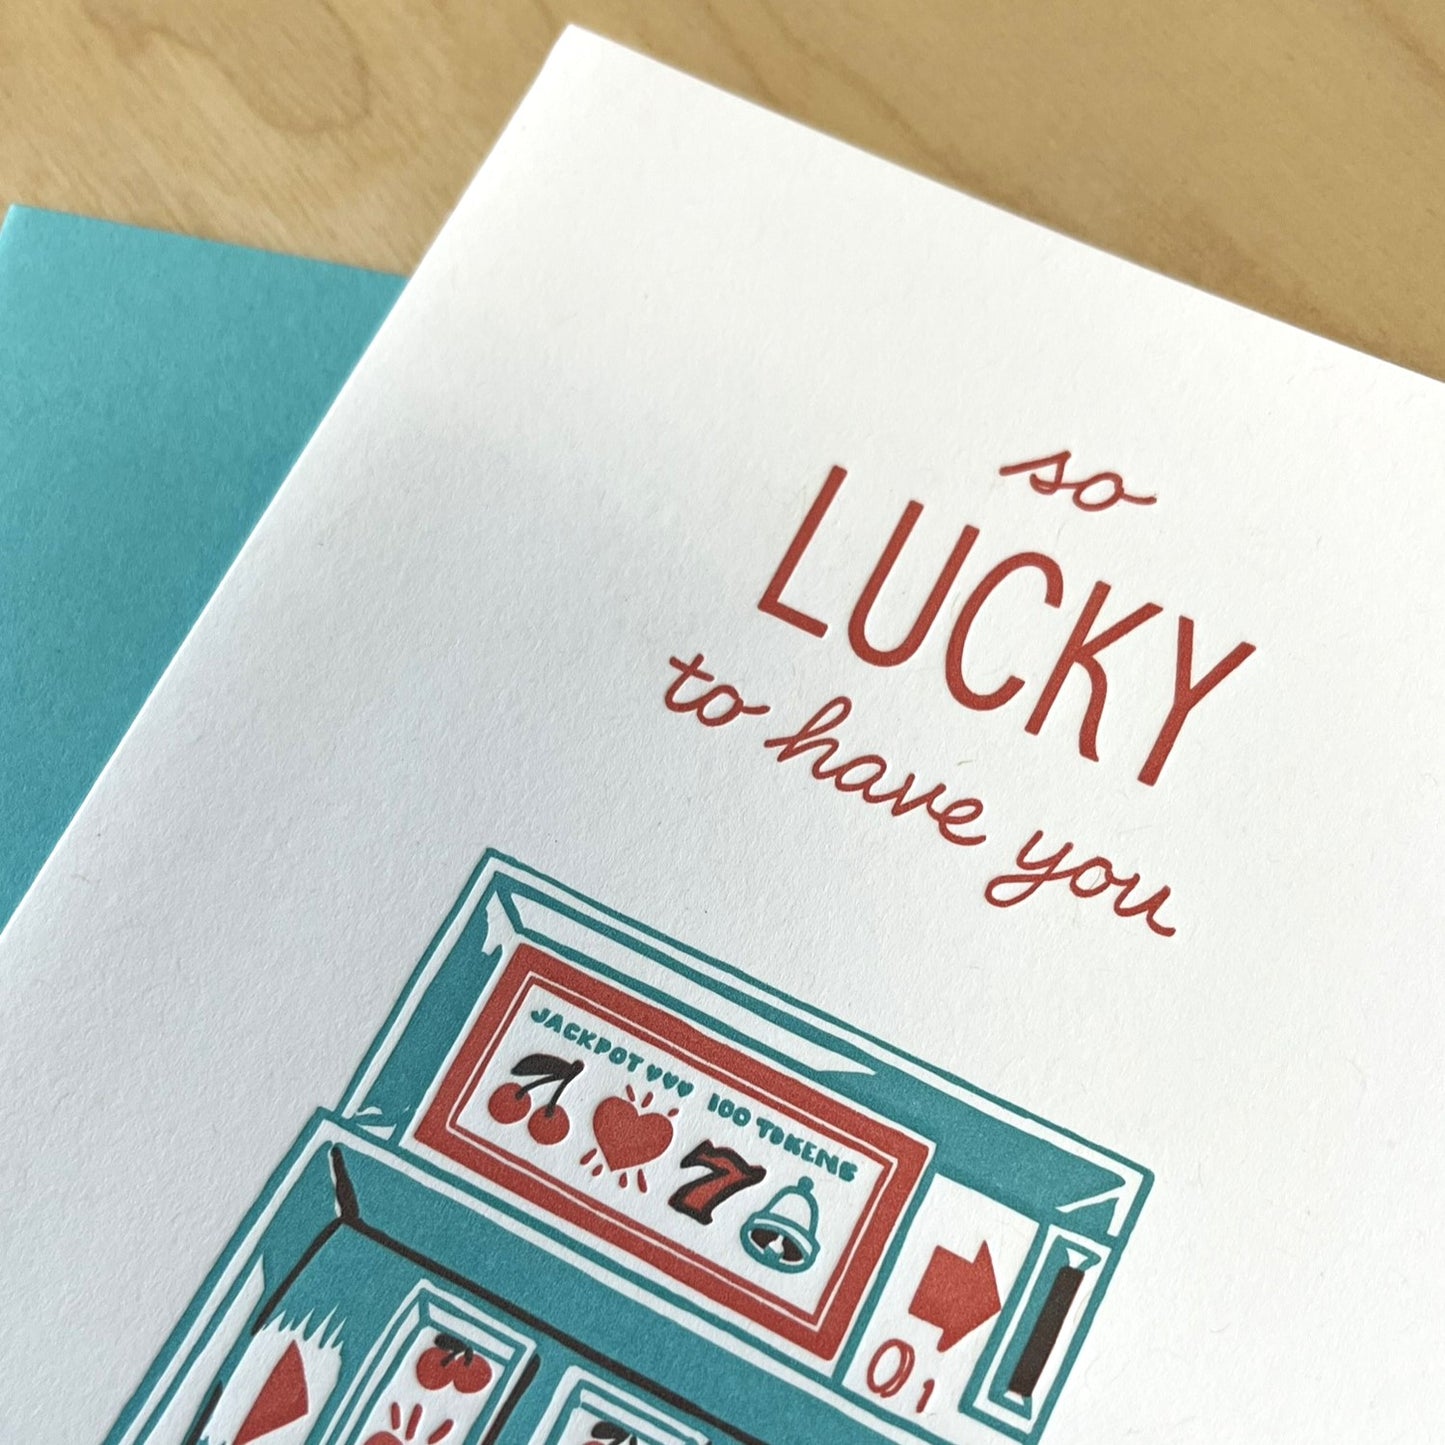 Card - Jackpot Lucky